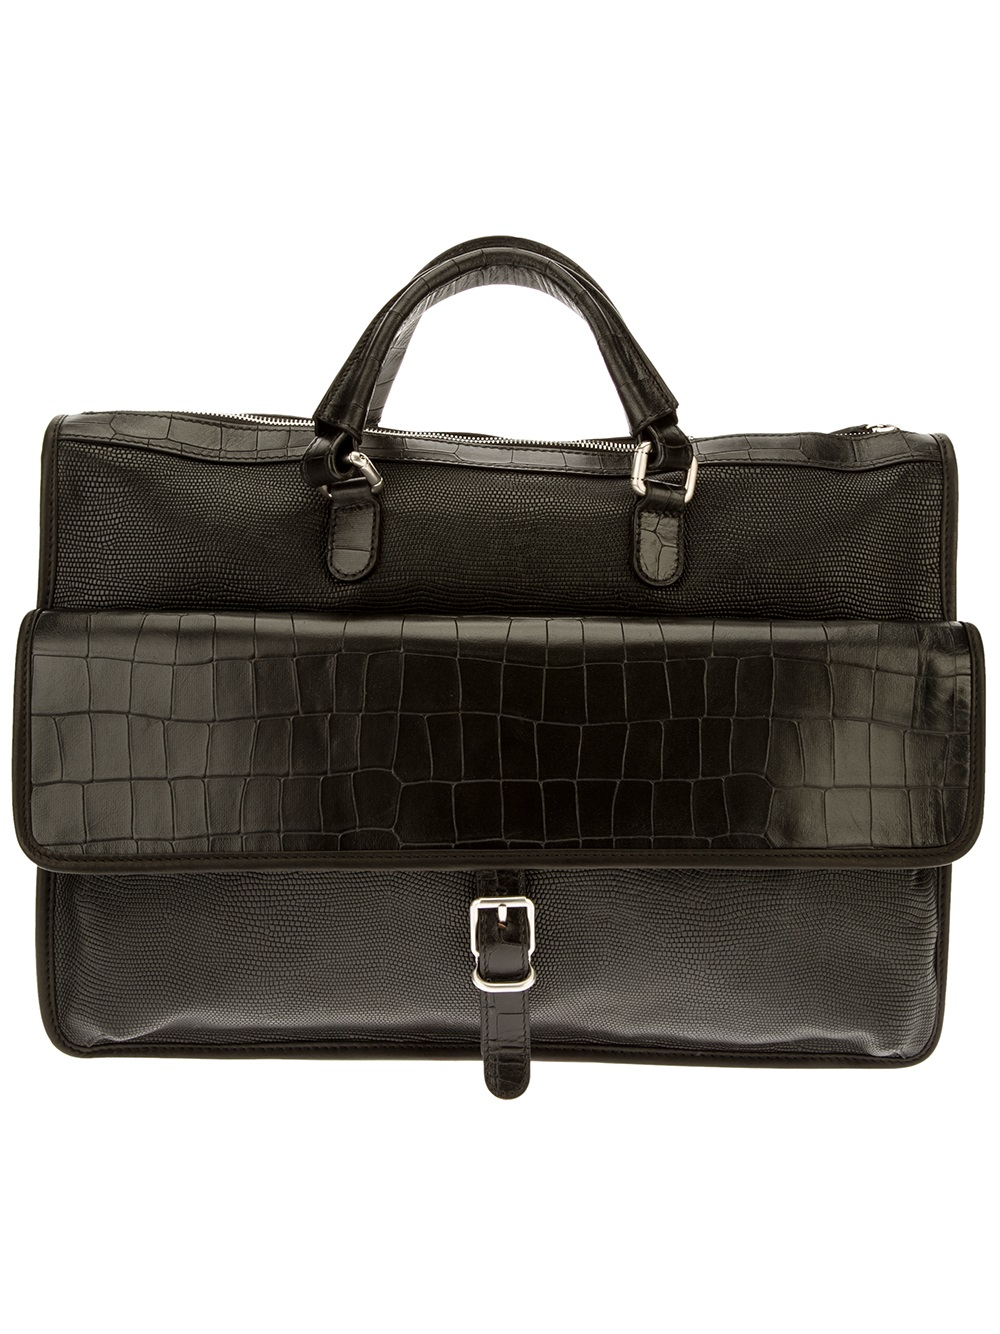 Giorgio Armani Leather Briefcase in Black for Men | Lyst